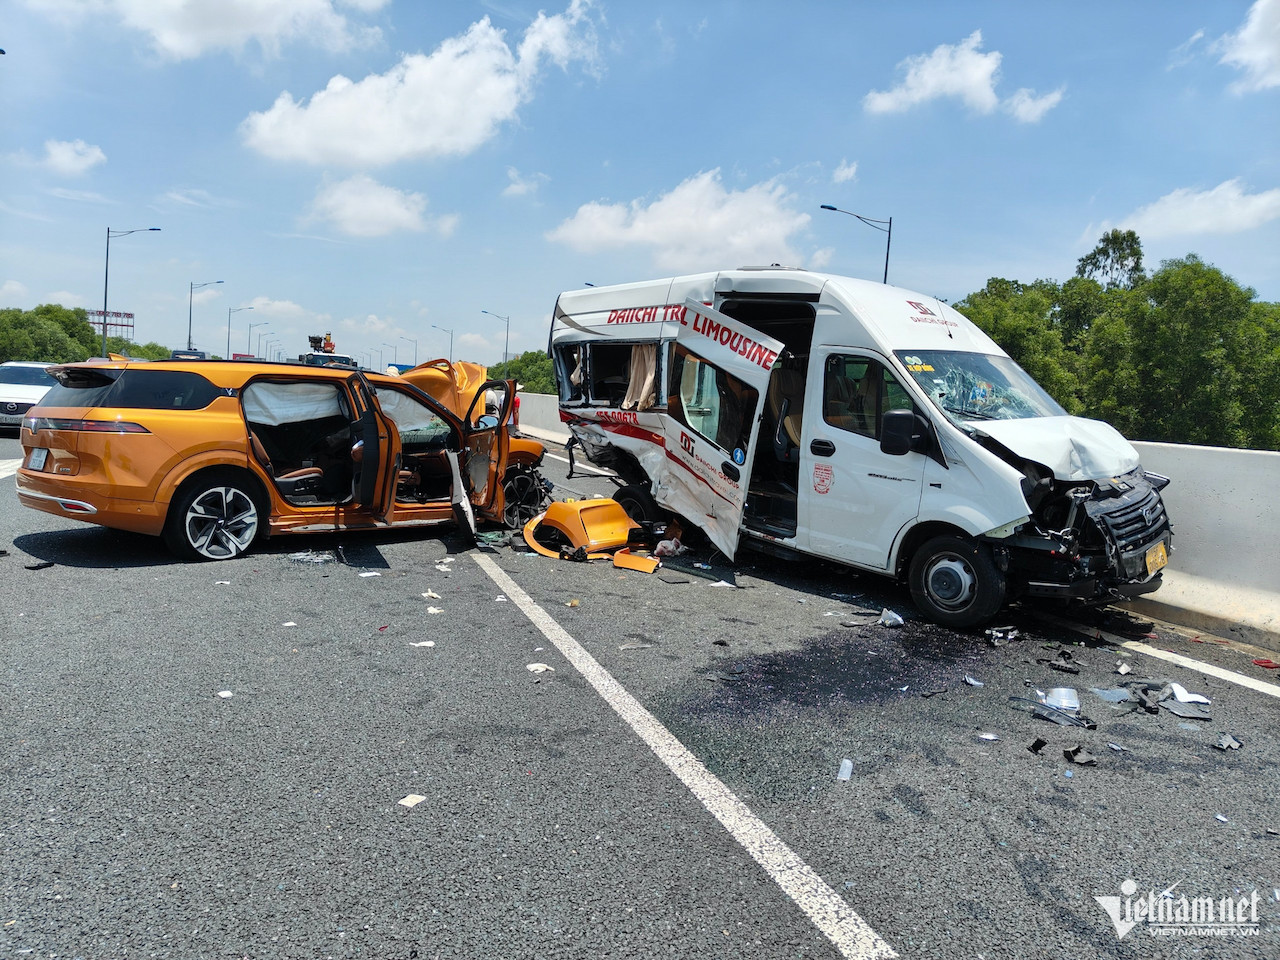 Tai nạn trên cao tốc: Giữ nguyên hiện trường đâu phải đứng giữa đường cãi vã